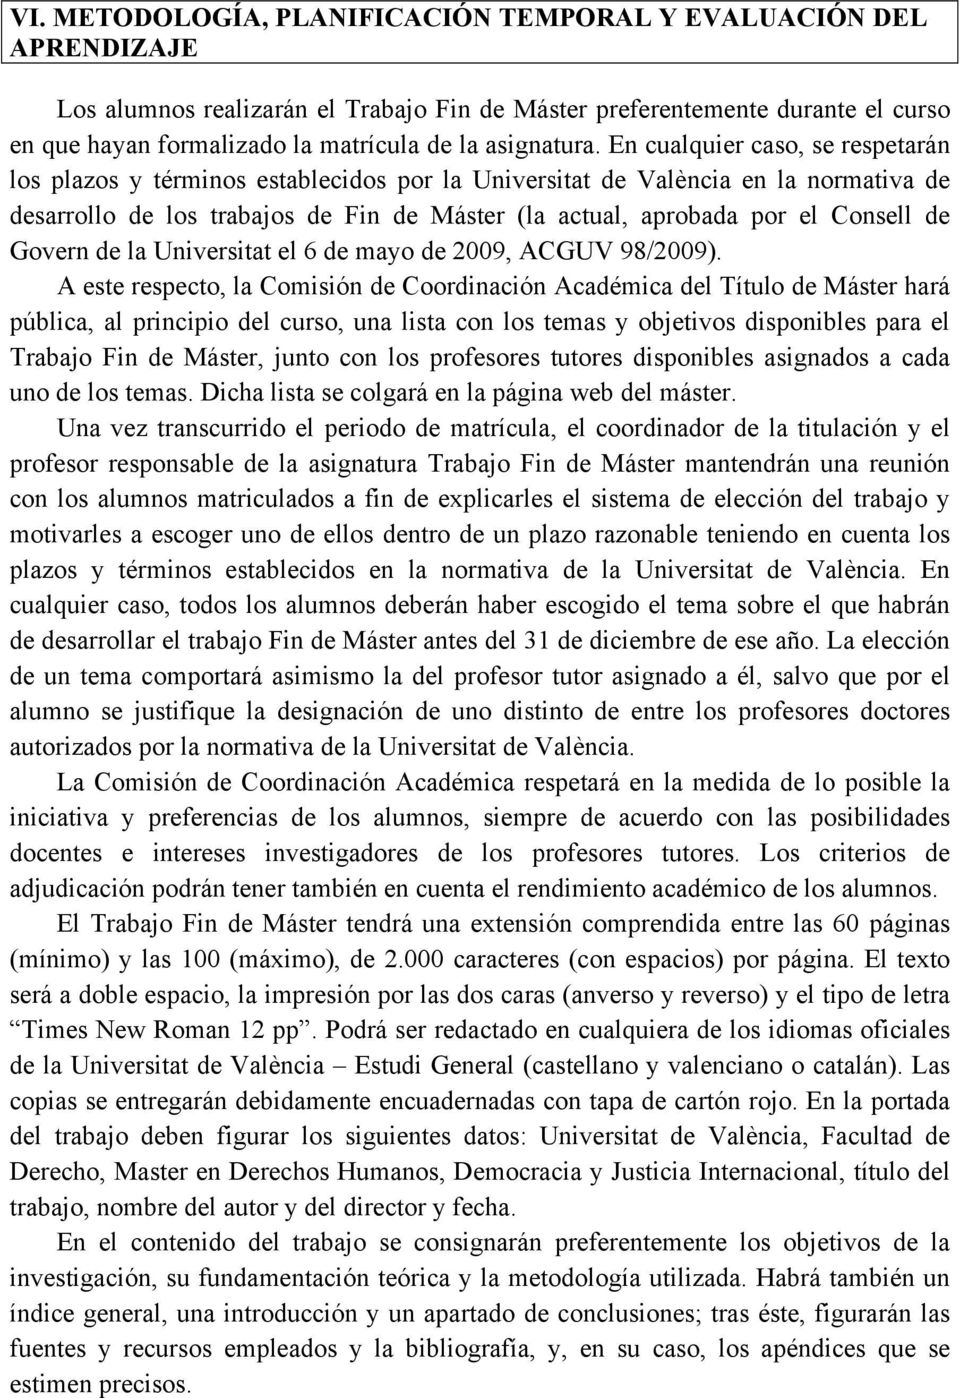 En cualquier caso, se respetarán los plazos y términos establecidos por la Universitat de València en la normativa de desarrollo de los trabajos de Fin de Máster (la actual, aprobada por el Consell